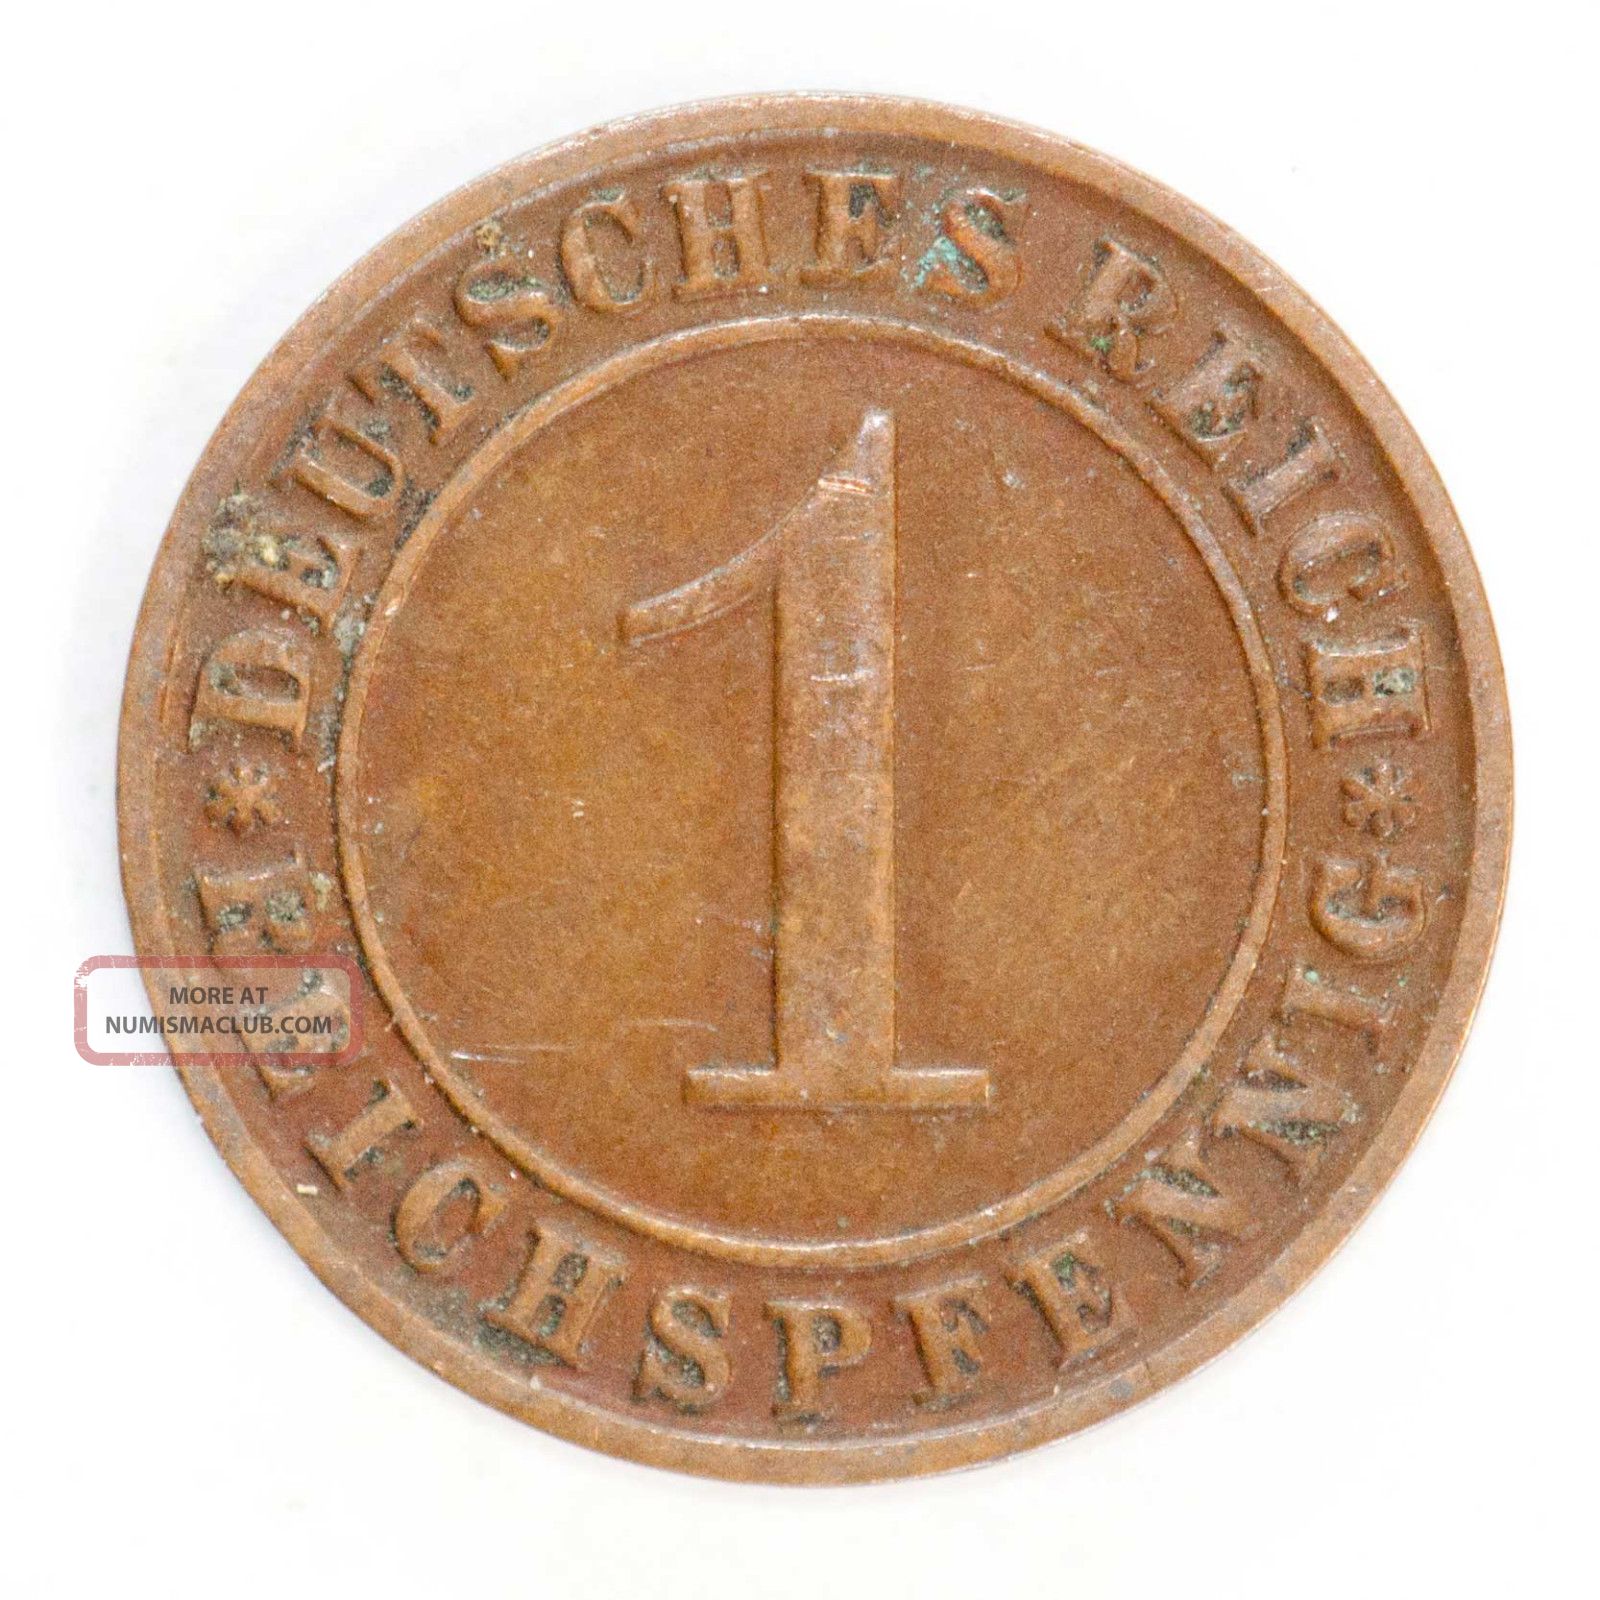 Germany Weimar Republic 1928 D Munich 1 Reichspfennig Km 37 Bronze Coin 175